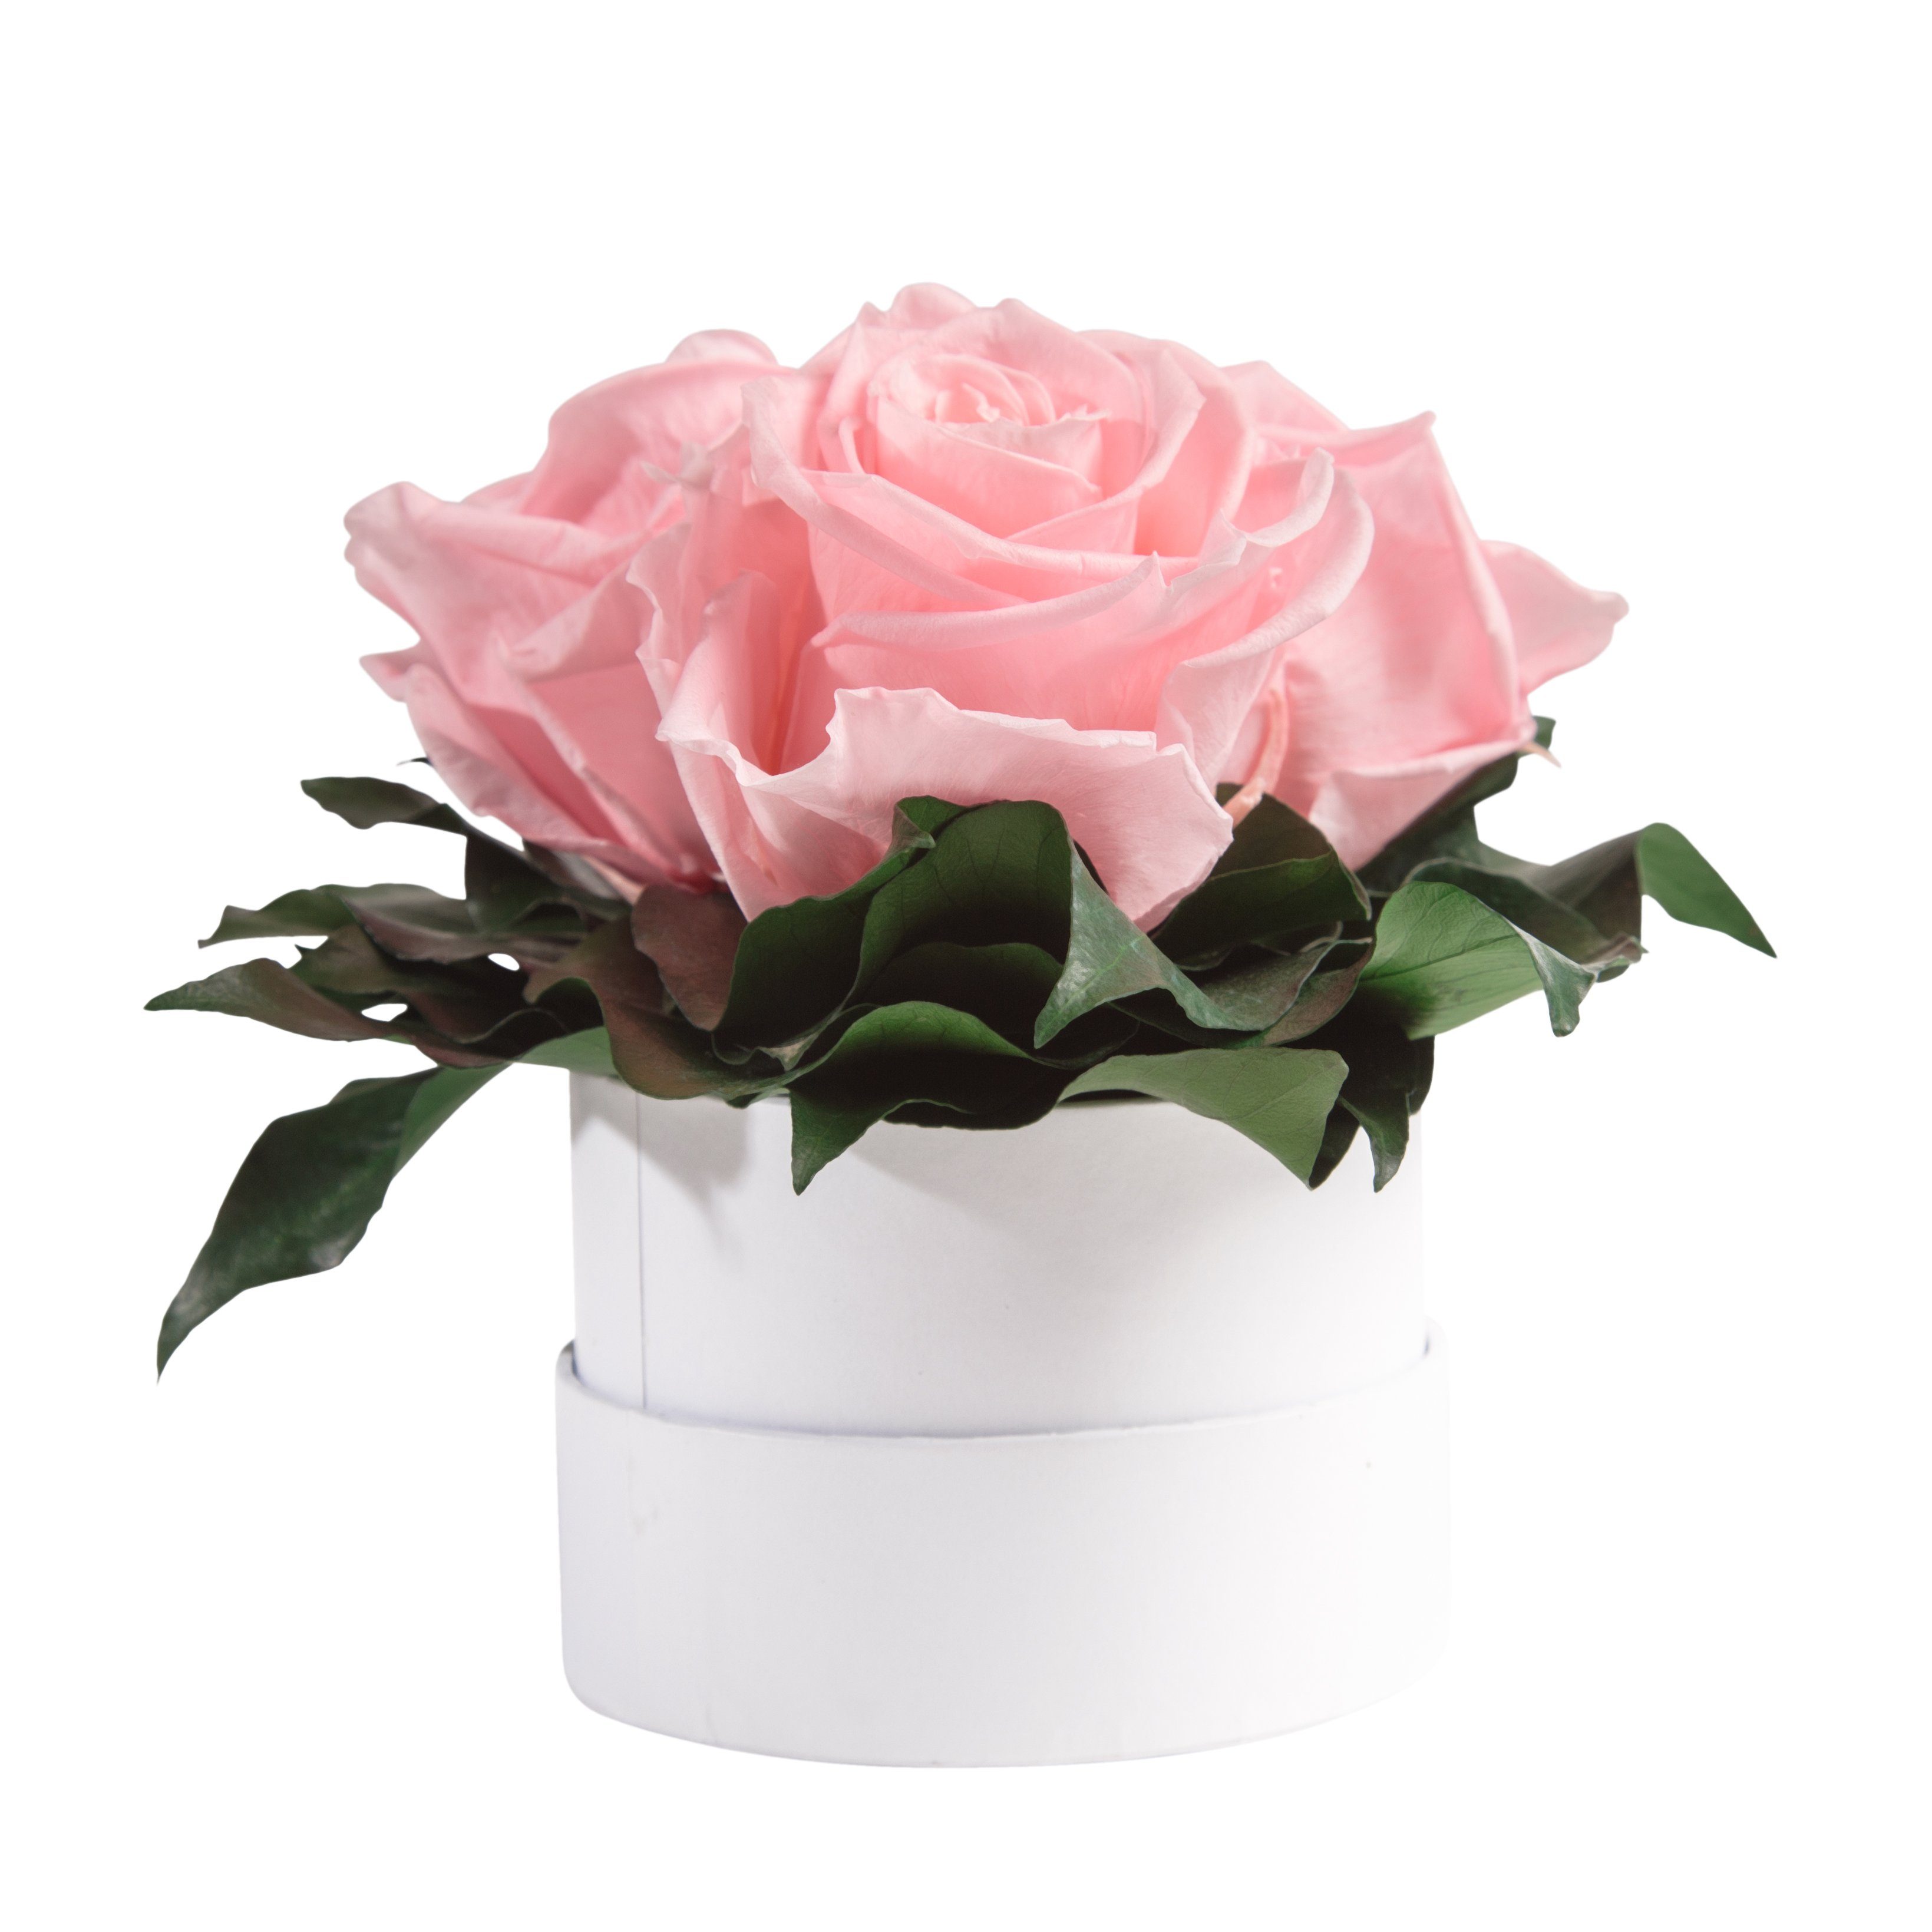 Kunstblume Infinity Rosenbox weiß rund 3 echte Rosen konserviert Rose, ROSEMARIE SCHULZ Heidelberg, Höhe 10 cm, Geschenk für Sie Rosen Rosa